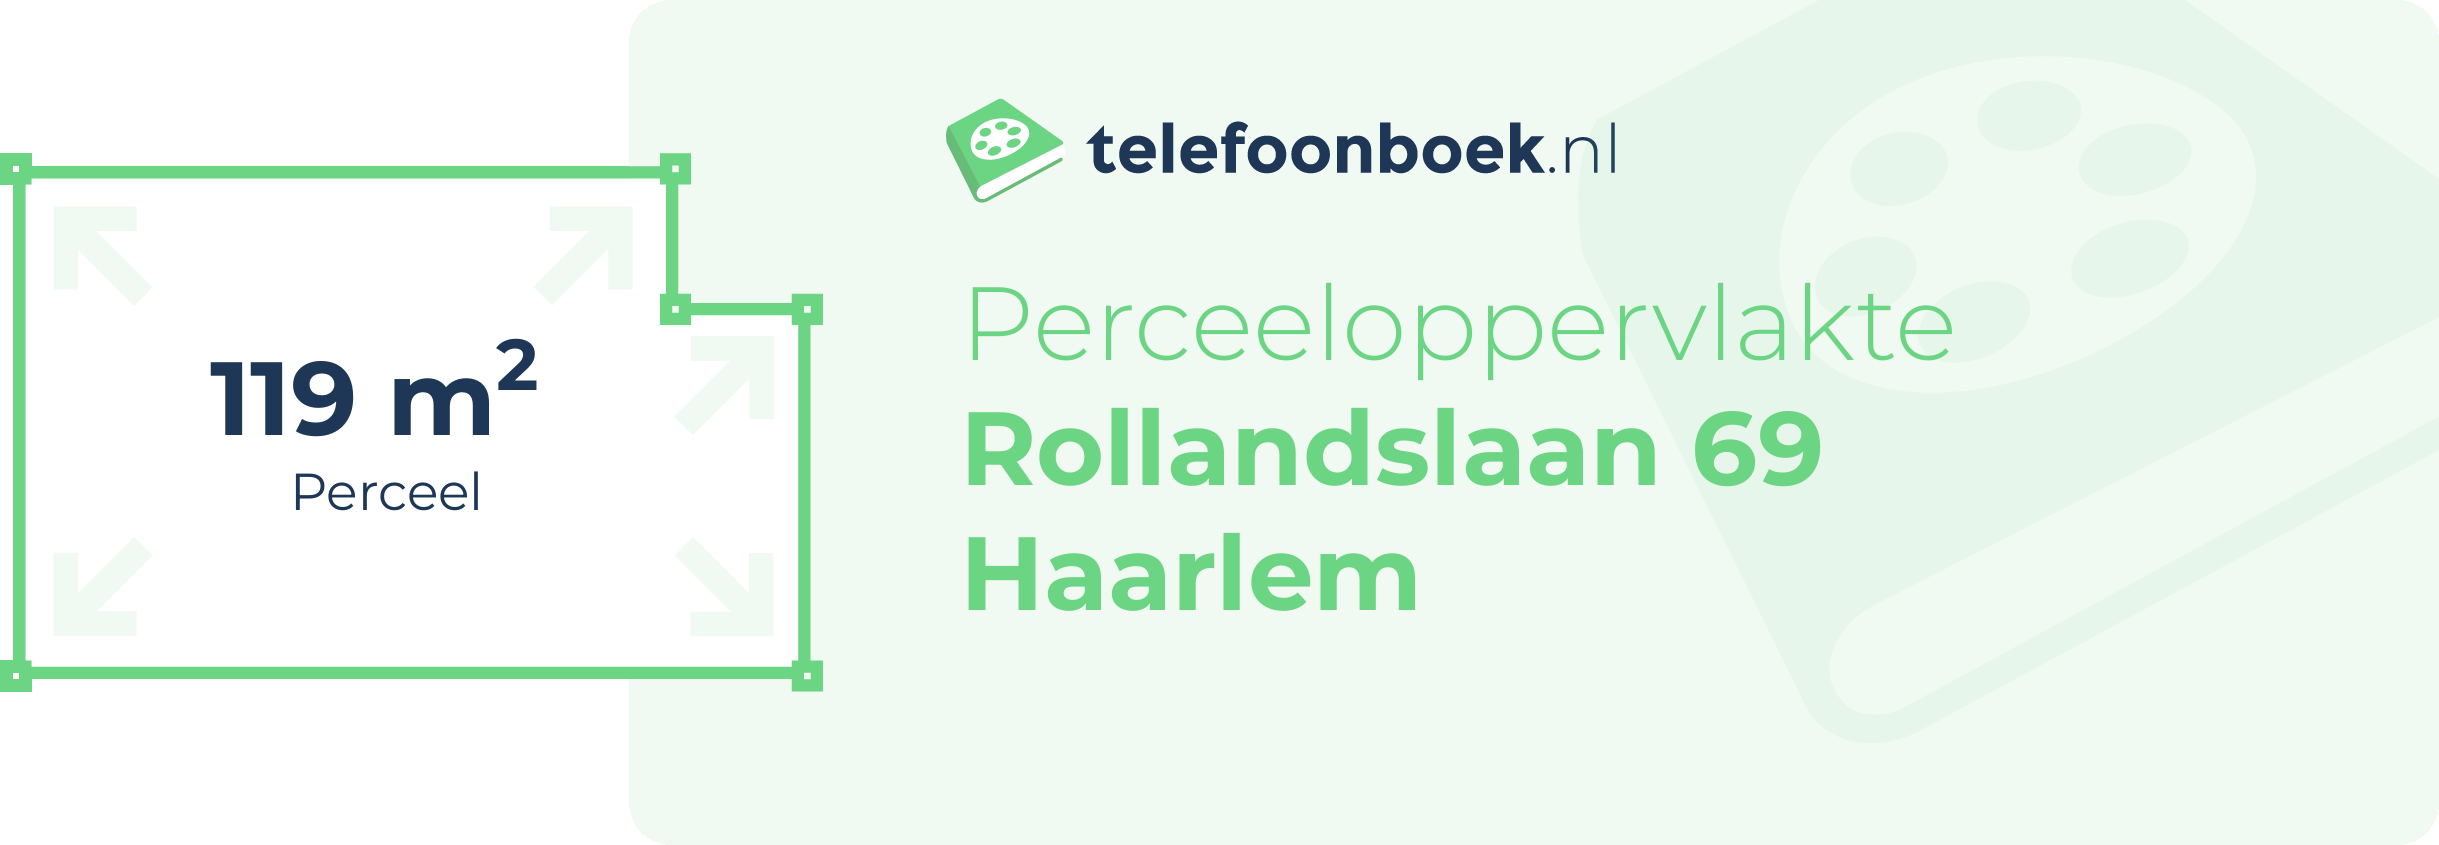 Perceeloppervlakte Rollandslaan 69 Haarlem